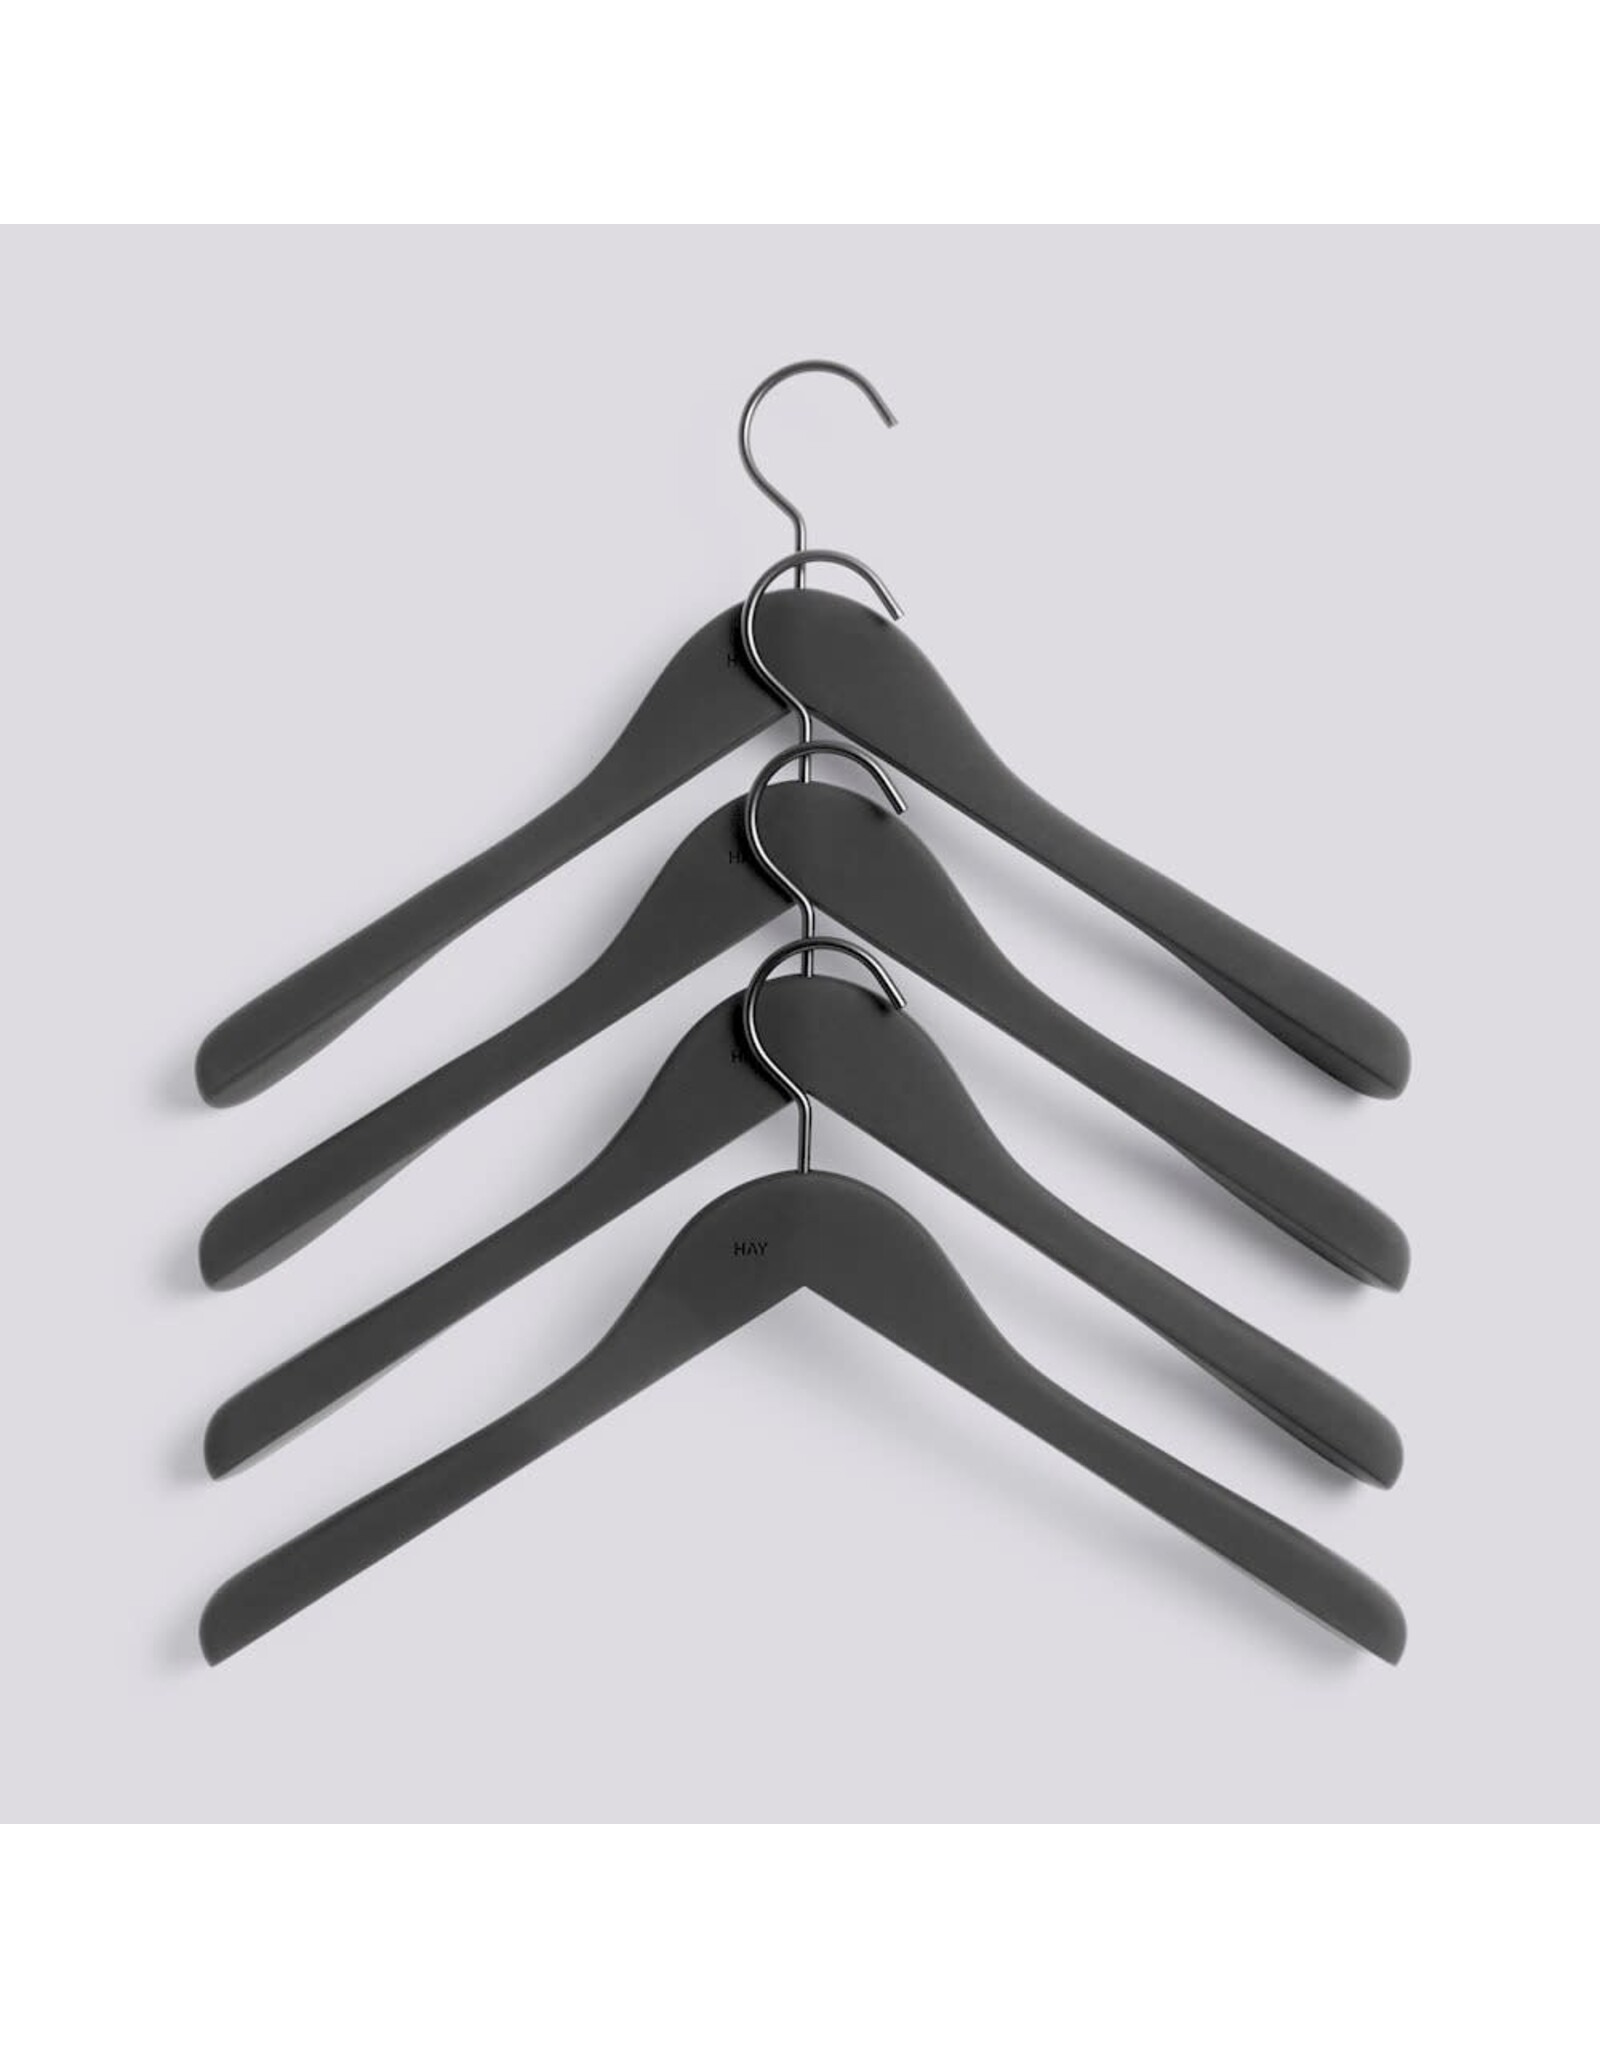 HAY Soft Coat Hanger-Set of 4-Wide black